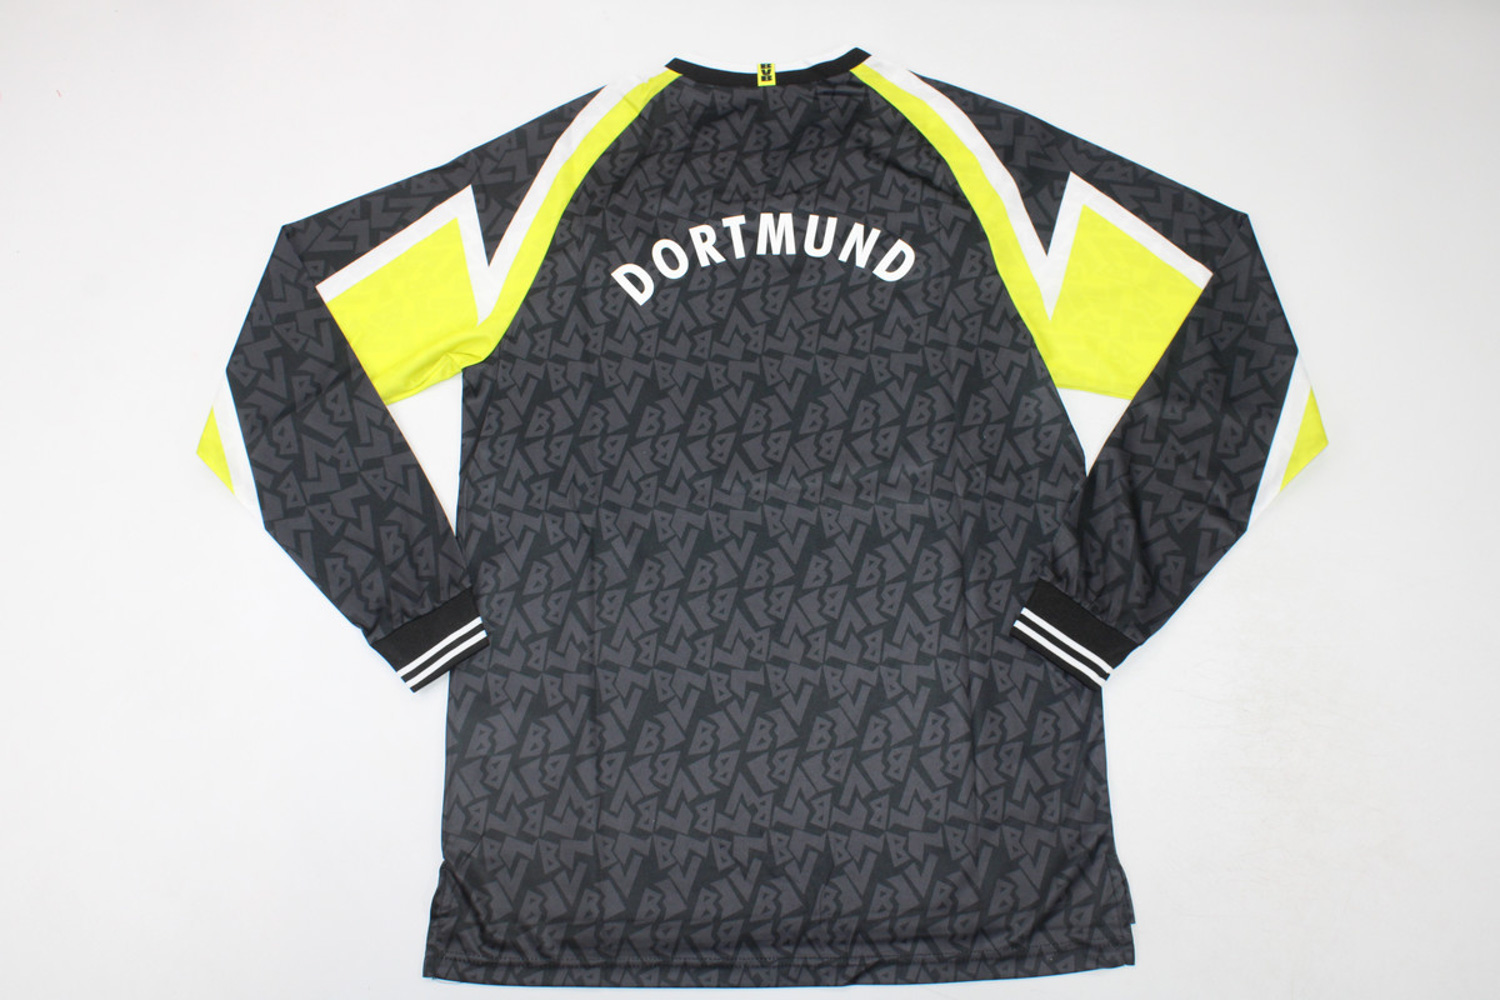 Camiseta Borussia Dortmund Retro 94-95 Home – Offsidex